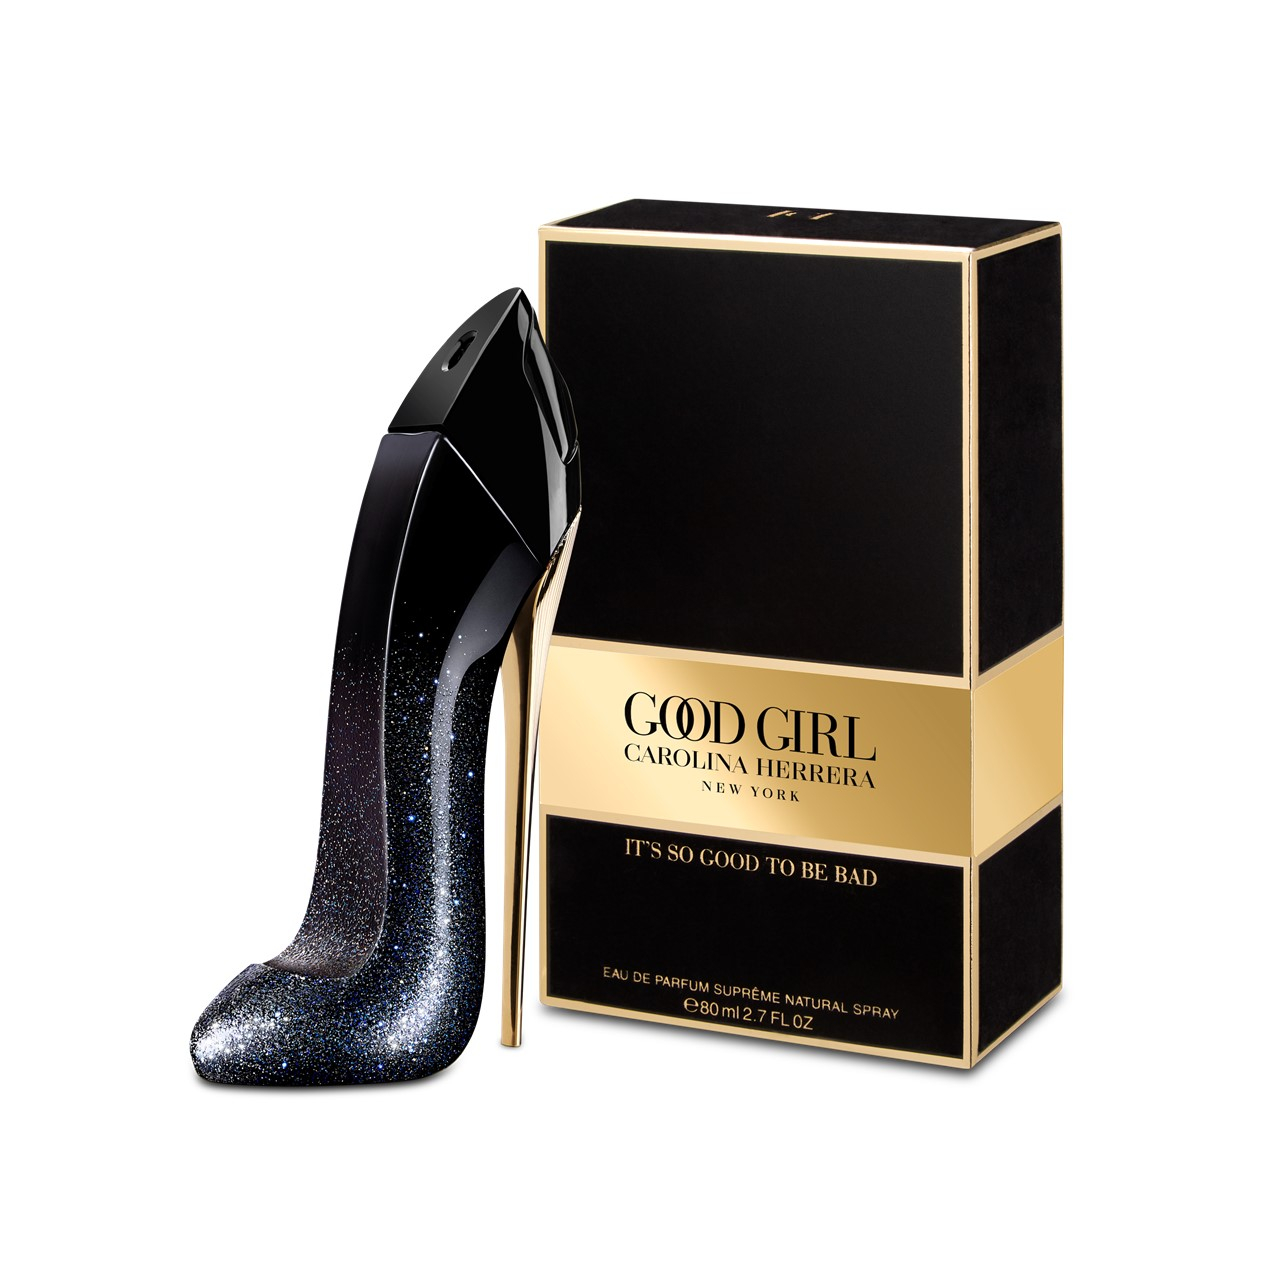 Buy Carolina Herrera Good Girl Eau de Parfum Suprême · USA